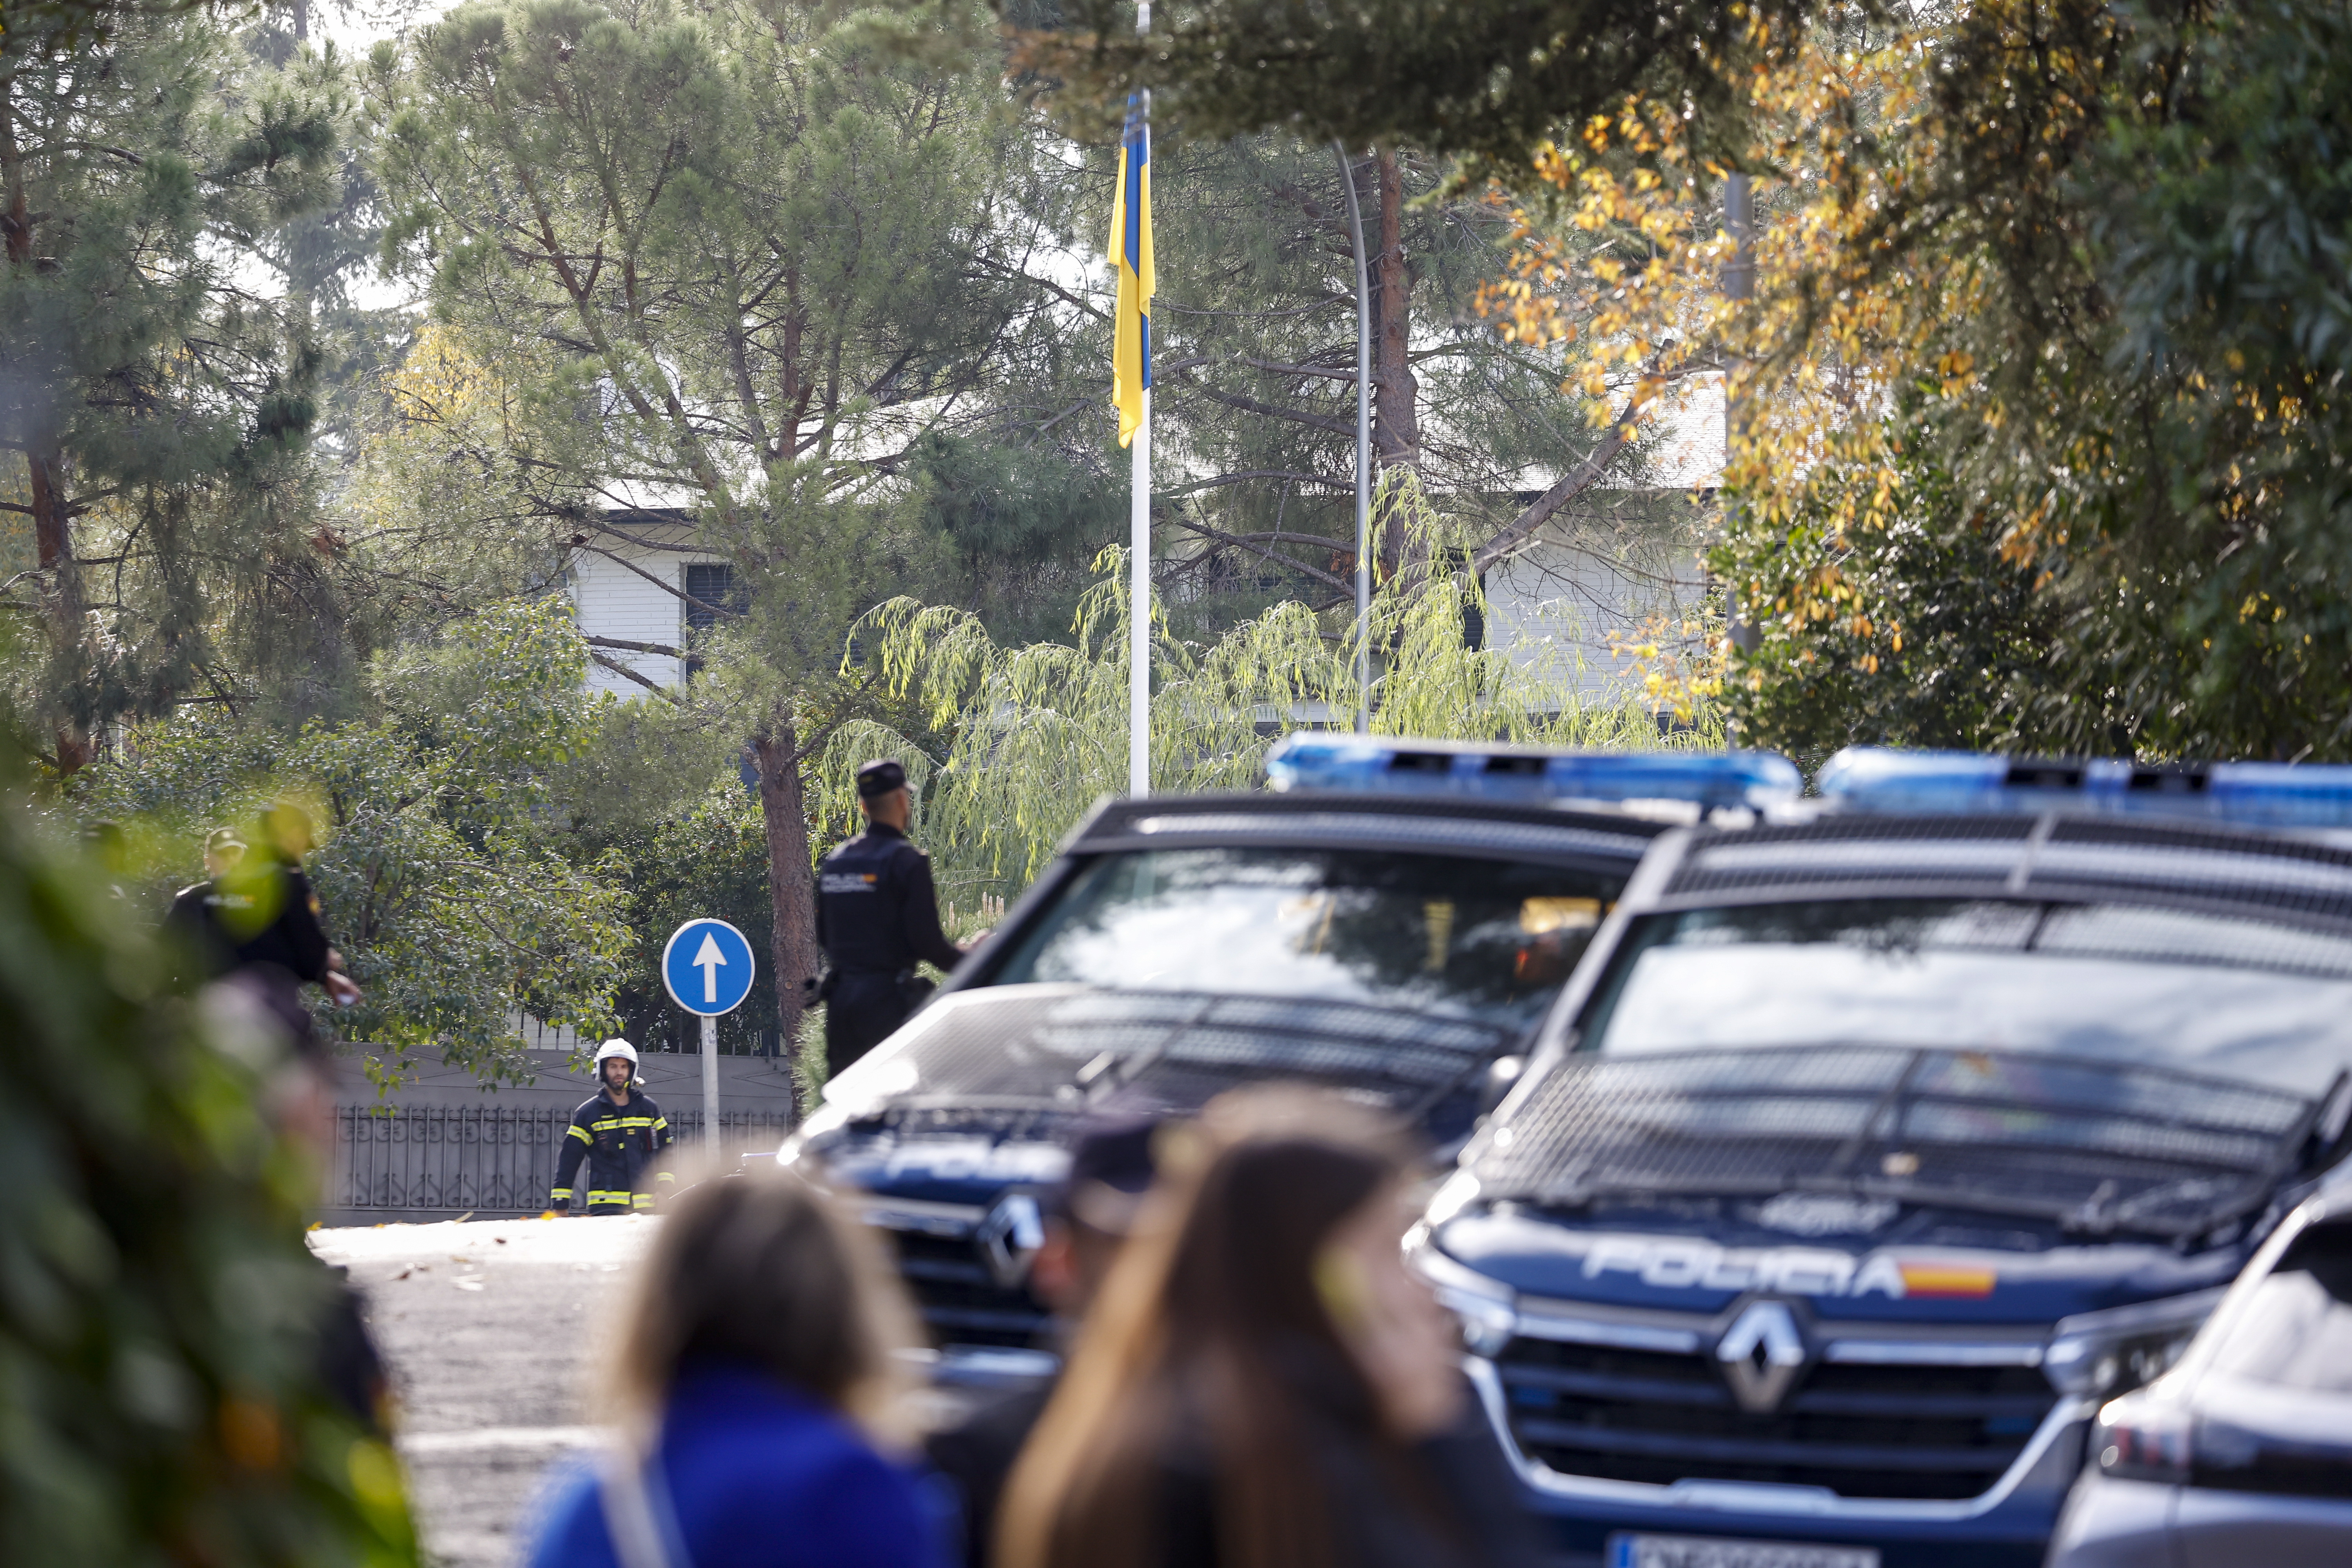 Visão | Embaixada ucraniana em Madrid recebe novo pacote suspeito